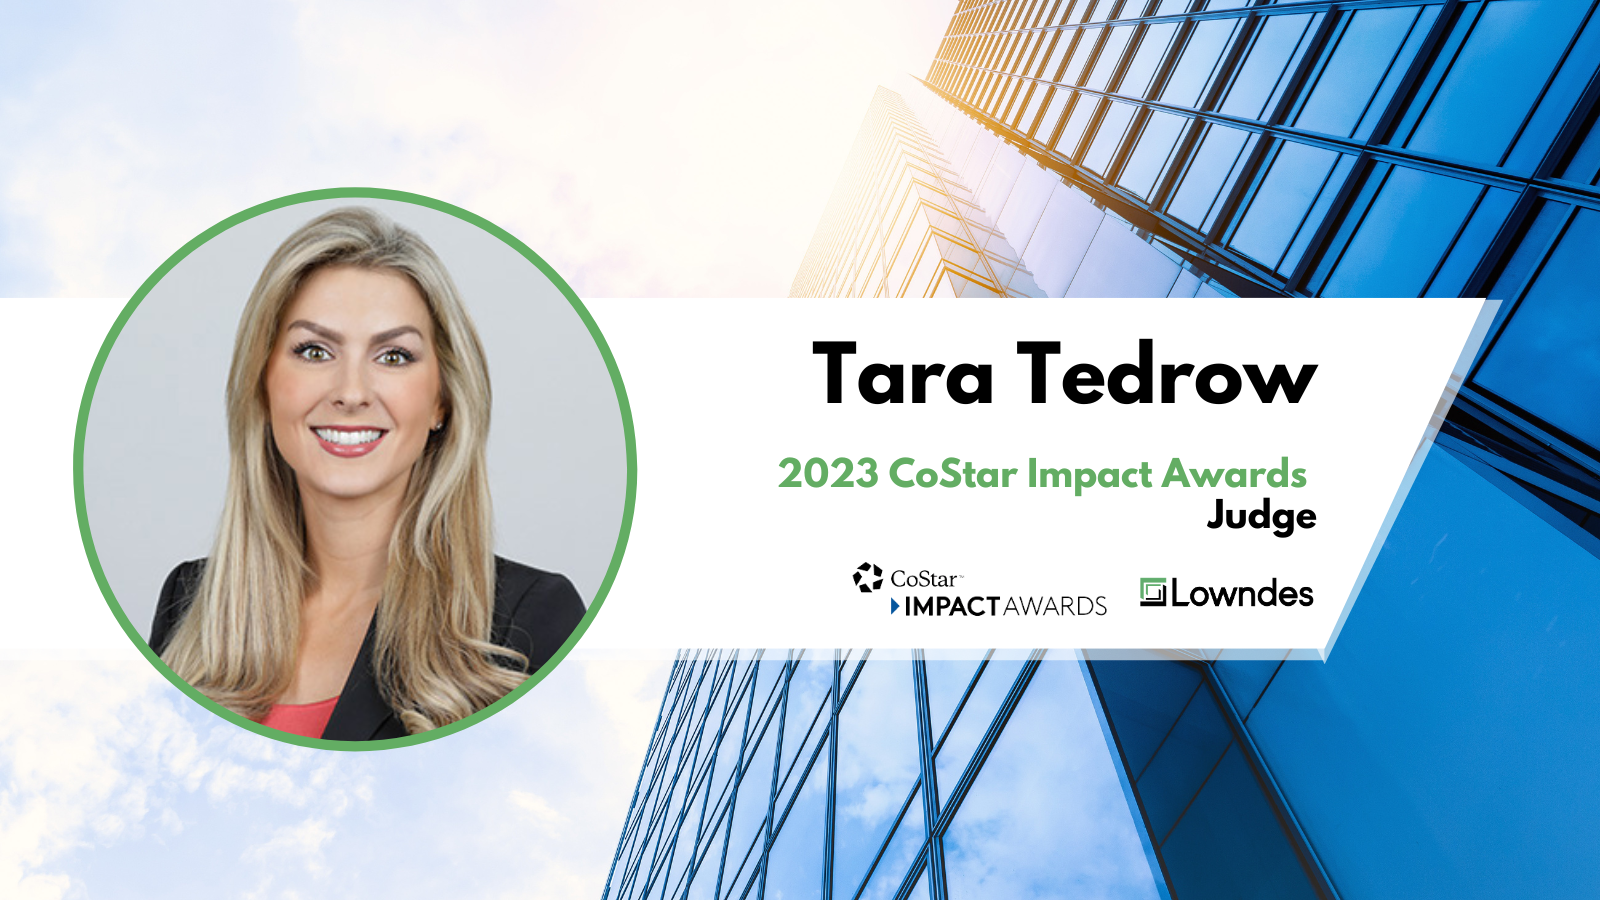 Tara Tedrow Judges the 2023 CoStar Impact Awards